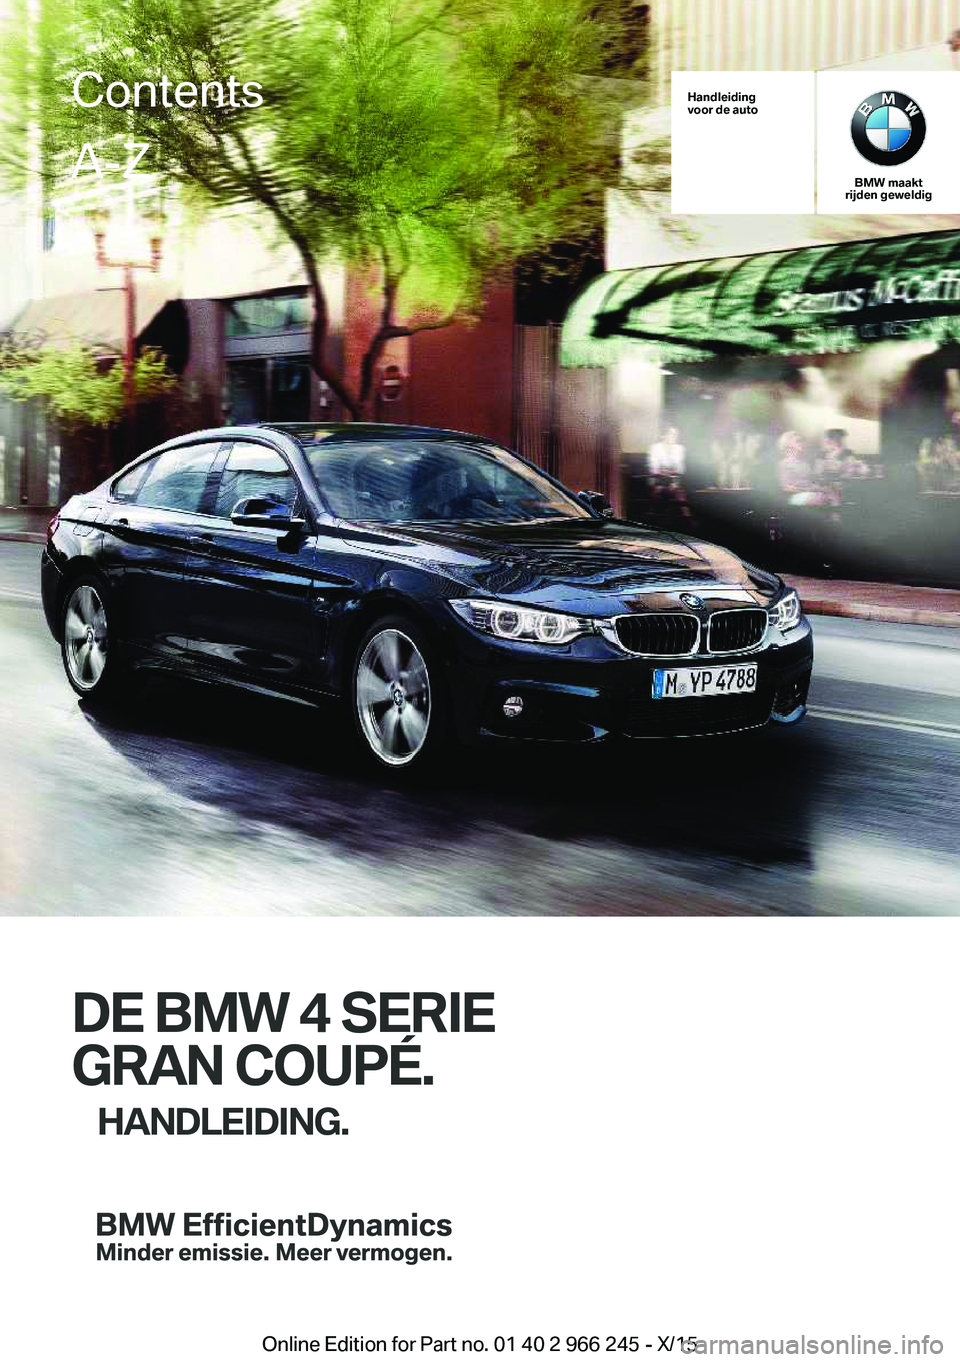 BMW 4 SERIES GRAN COUPE 2016  Instructieboekjes (in Dutch) Handleiding
voor de auto
BMW maakt
rijden geweldig
DE BMW 4 SERIE
GRAN COUPÉ. HANDLEIDING.
ContentsA-Z
Online Edition for Part no. 01 40 2 966 245 - X/15   